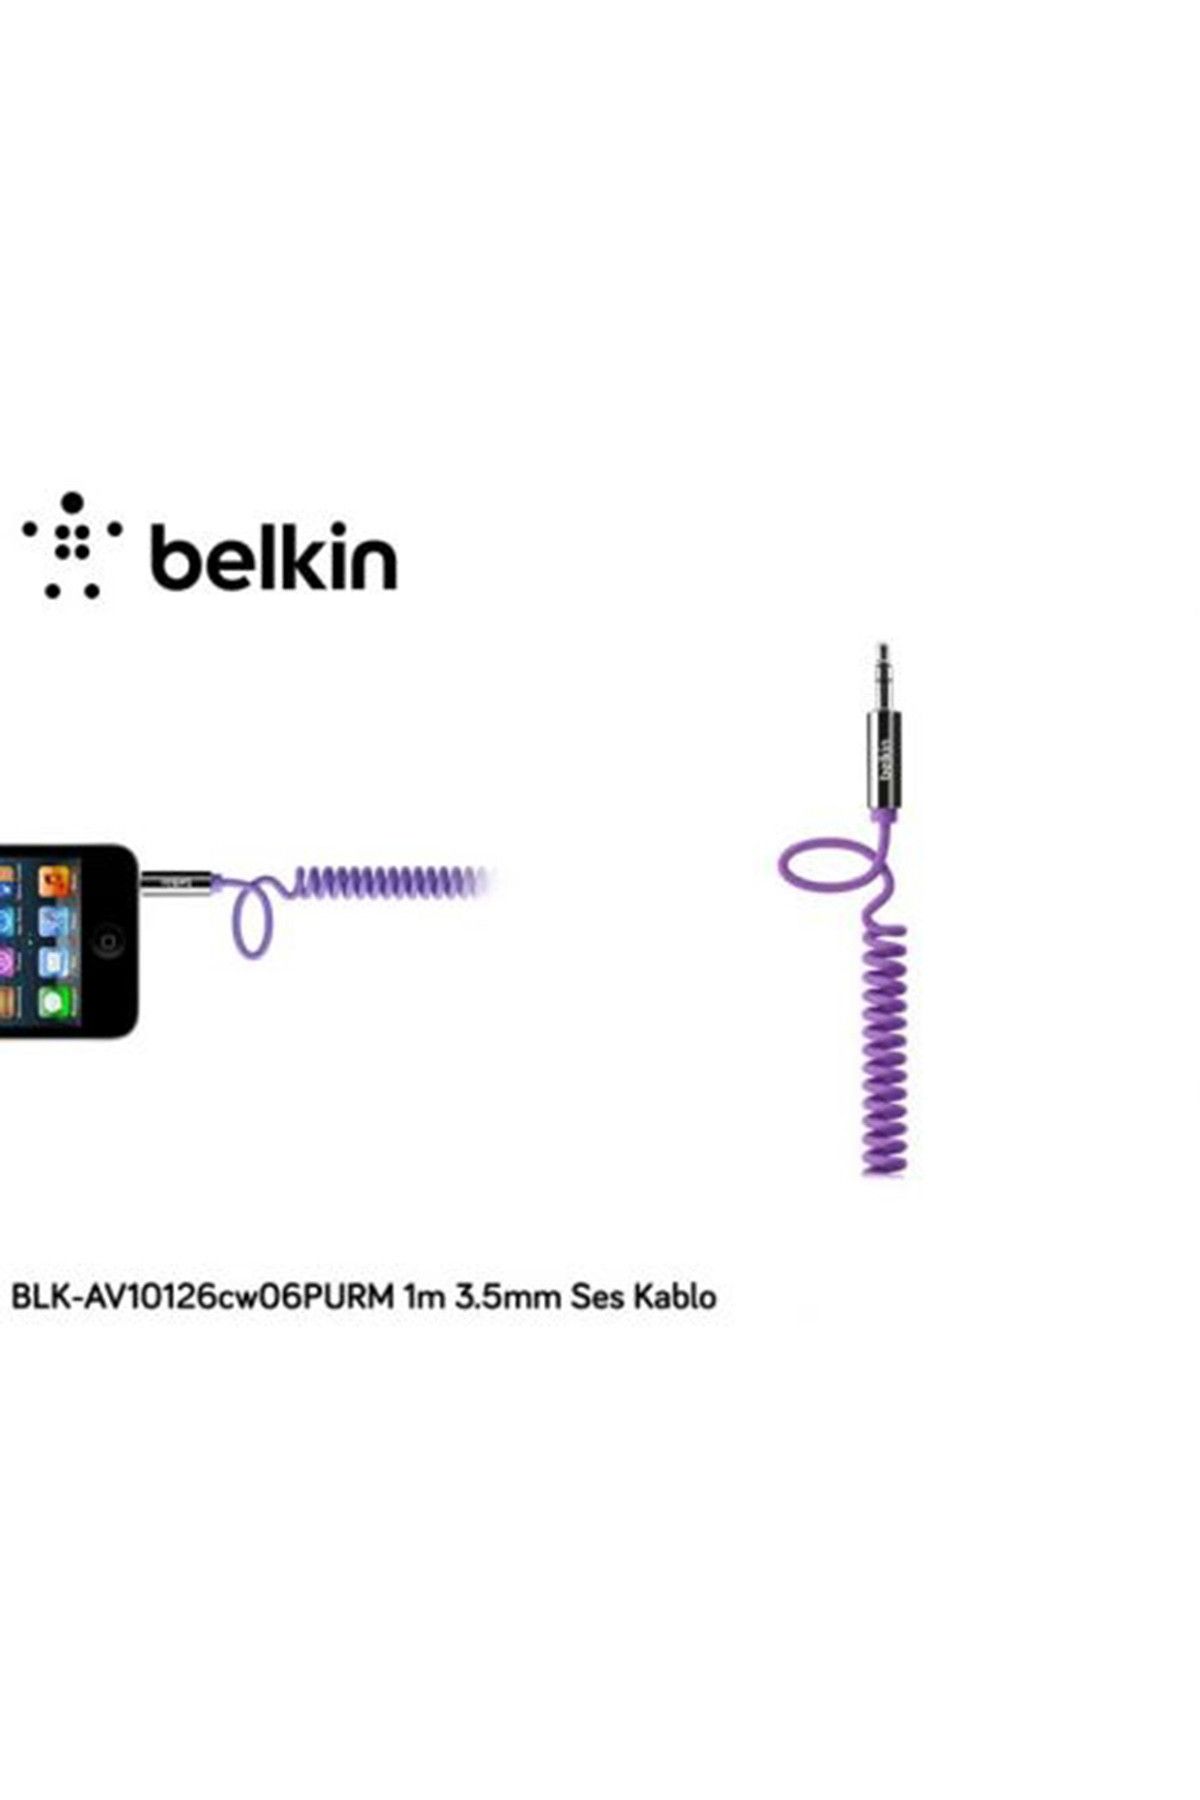 Belkin Blk-av10126cw06purm 1m 3.5mm Ses Kablo